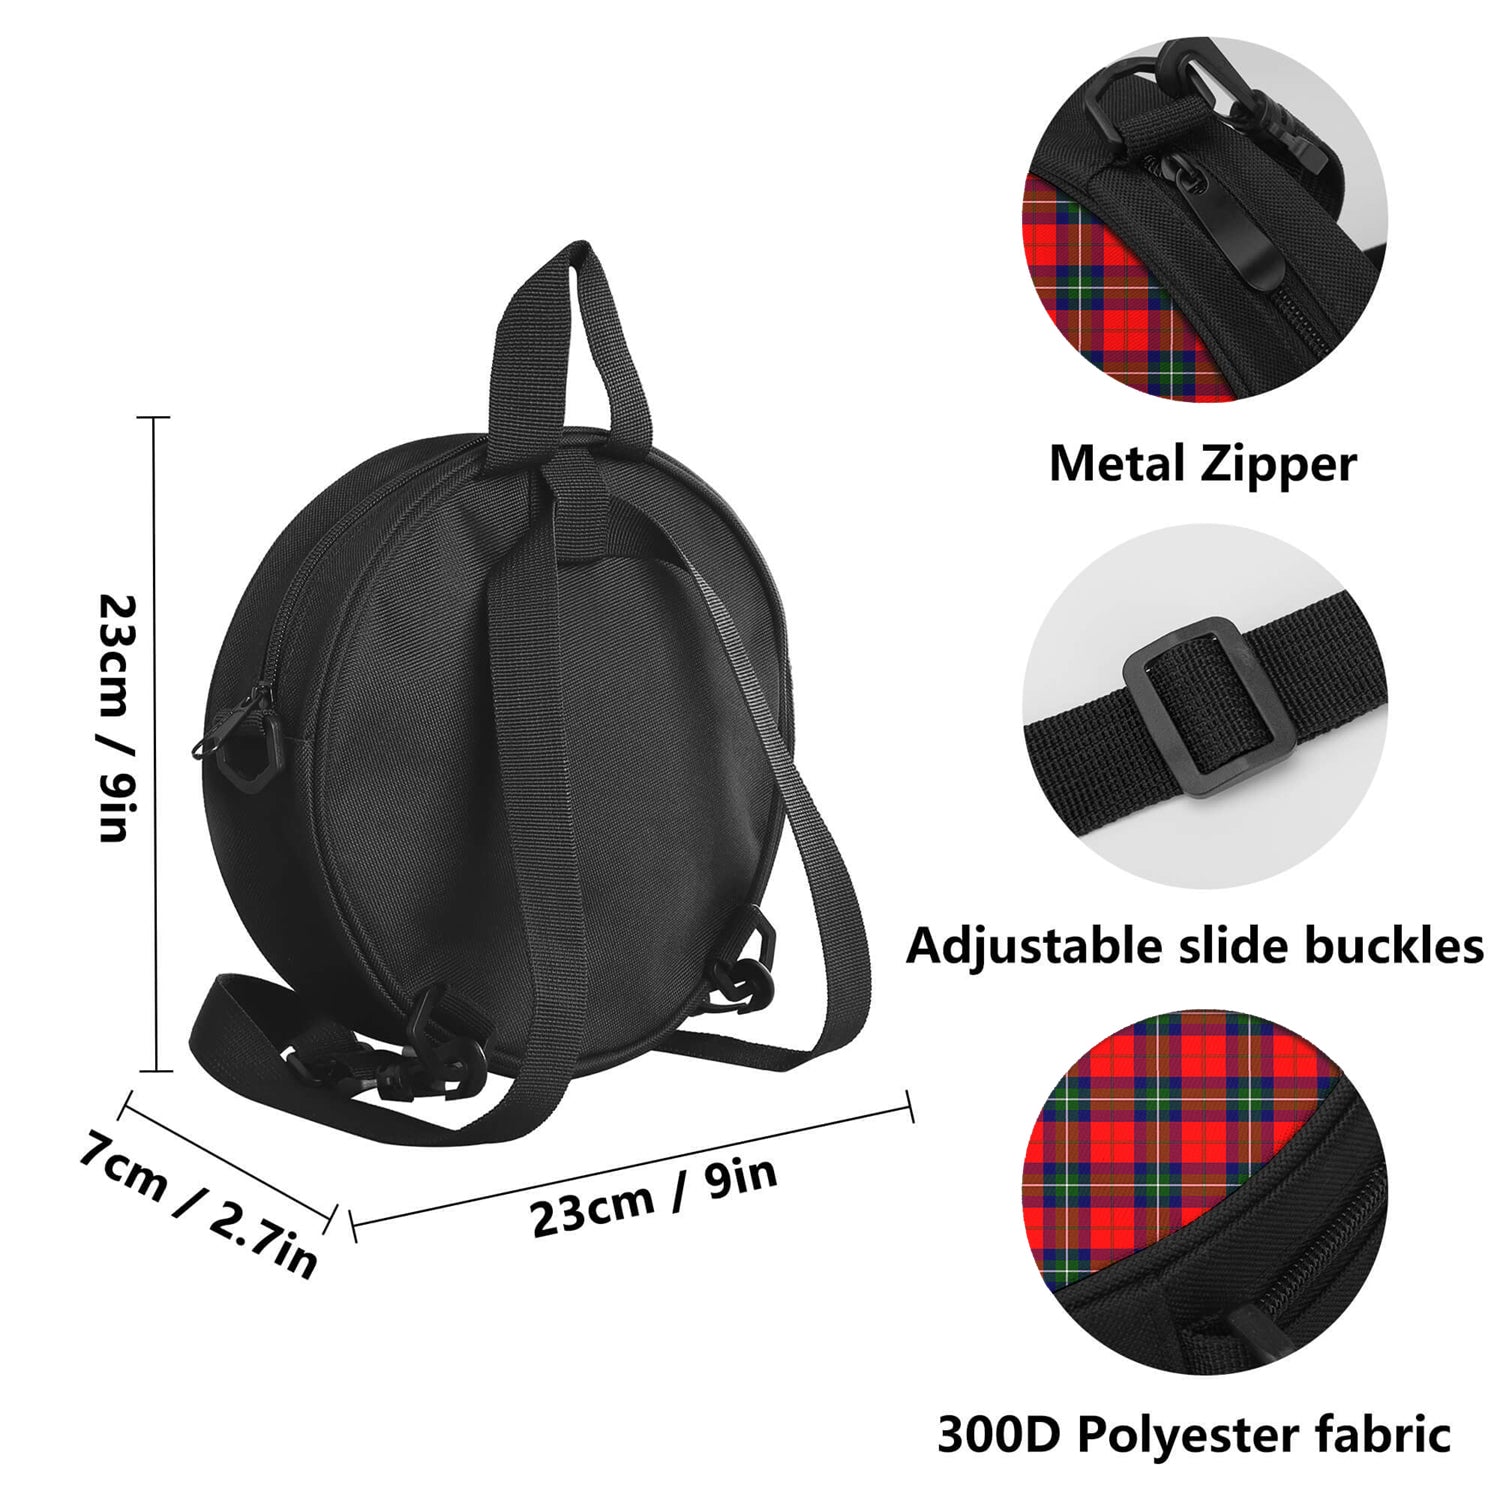 ruthven-modern-tartan-round-satchel-bags